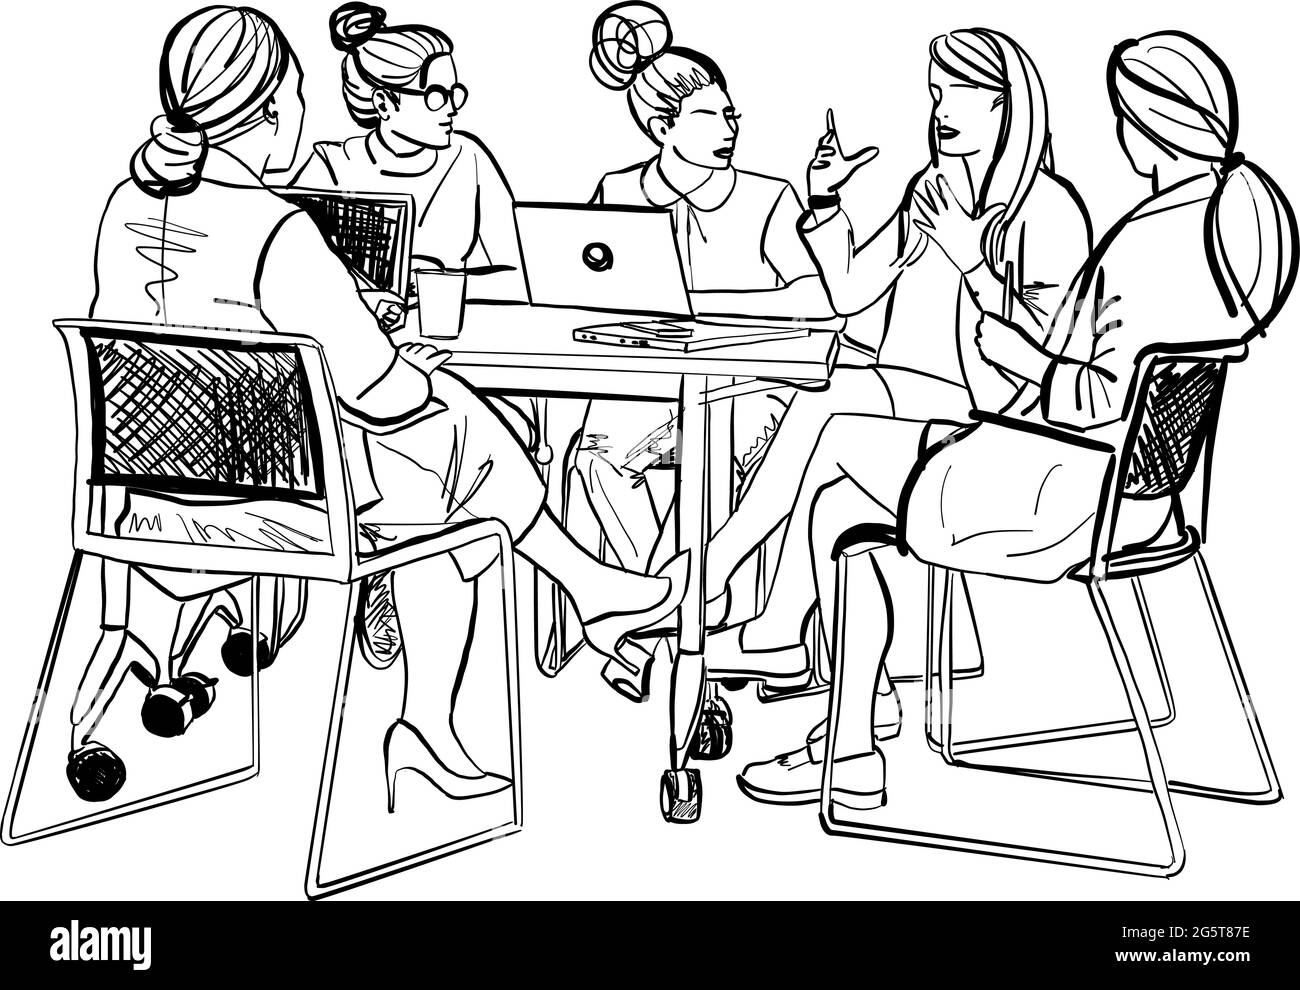 Weibliche Kreative in einem Besprechungsraum hören ihren Kollegen zu, die eine informelle Präsentation halten. Vektorgrafik Stock Vektor